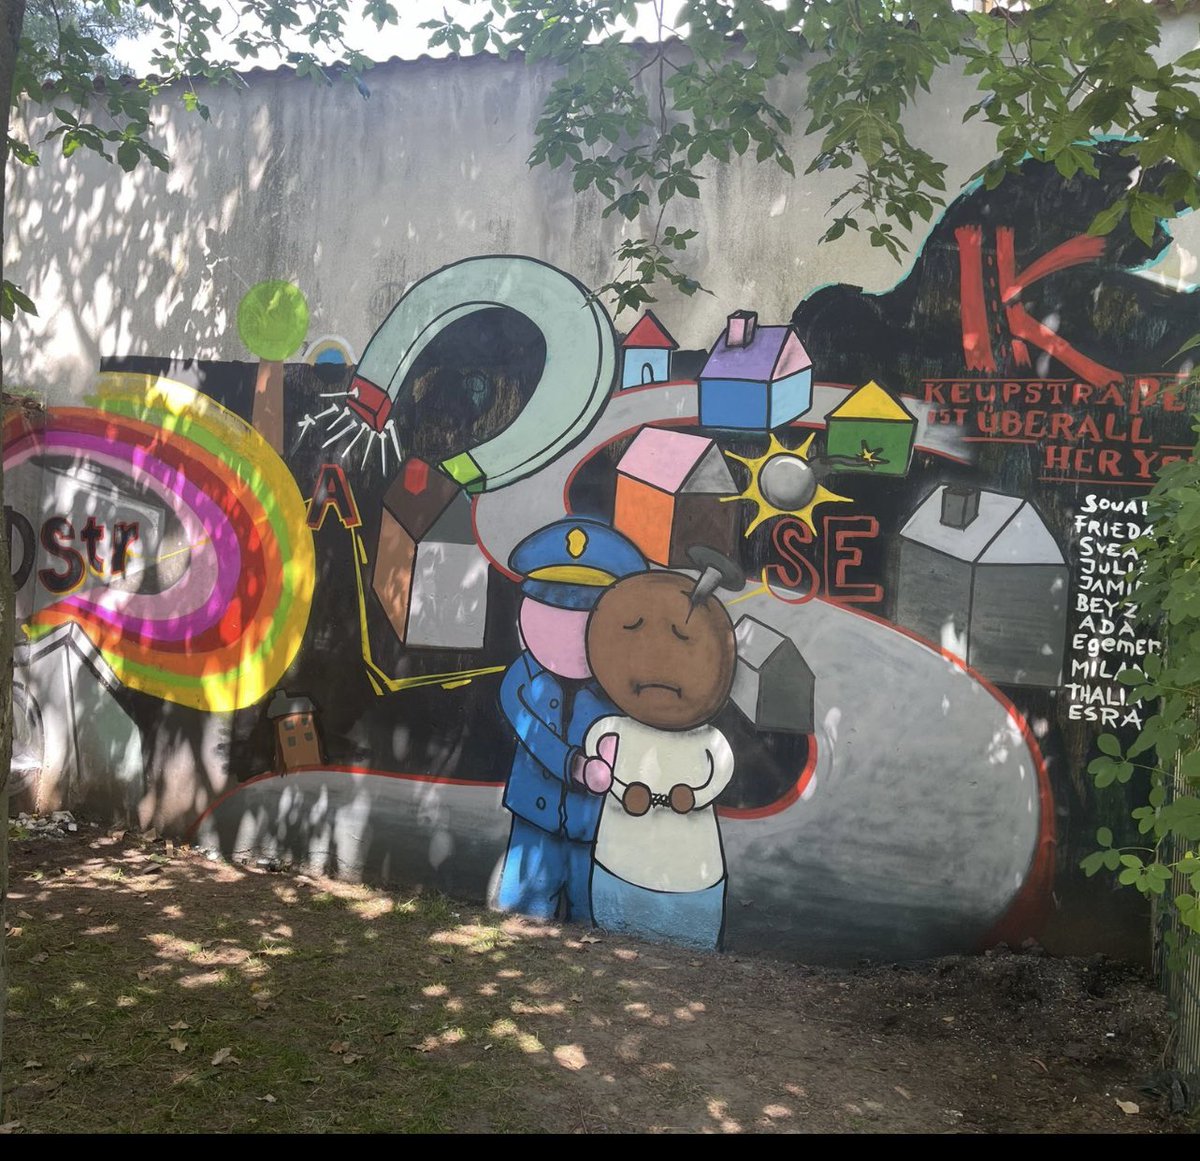 Schülerinnen und Schüler aus #Köln Mülheim erinnern mit einem Wandbild an den NSU-Anschlag auf der #Keupstrasse … In Kritik steht die Täter-Opfer-Umkehr durch Polizei und Sicherheitsbehörden! #KeinSchlussstrich